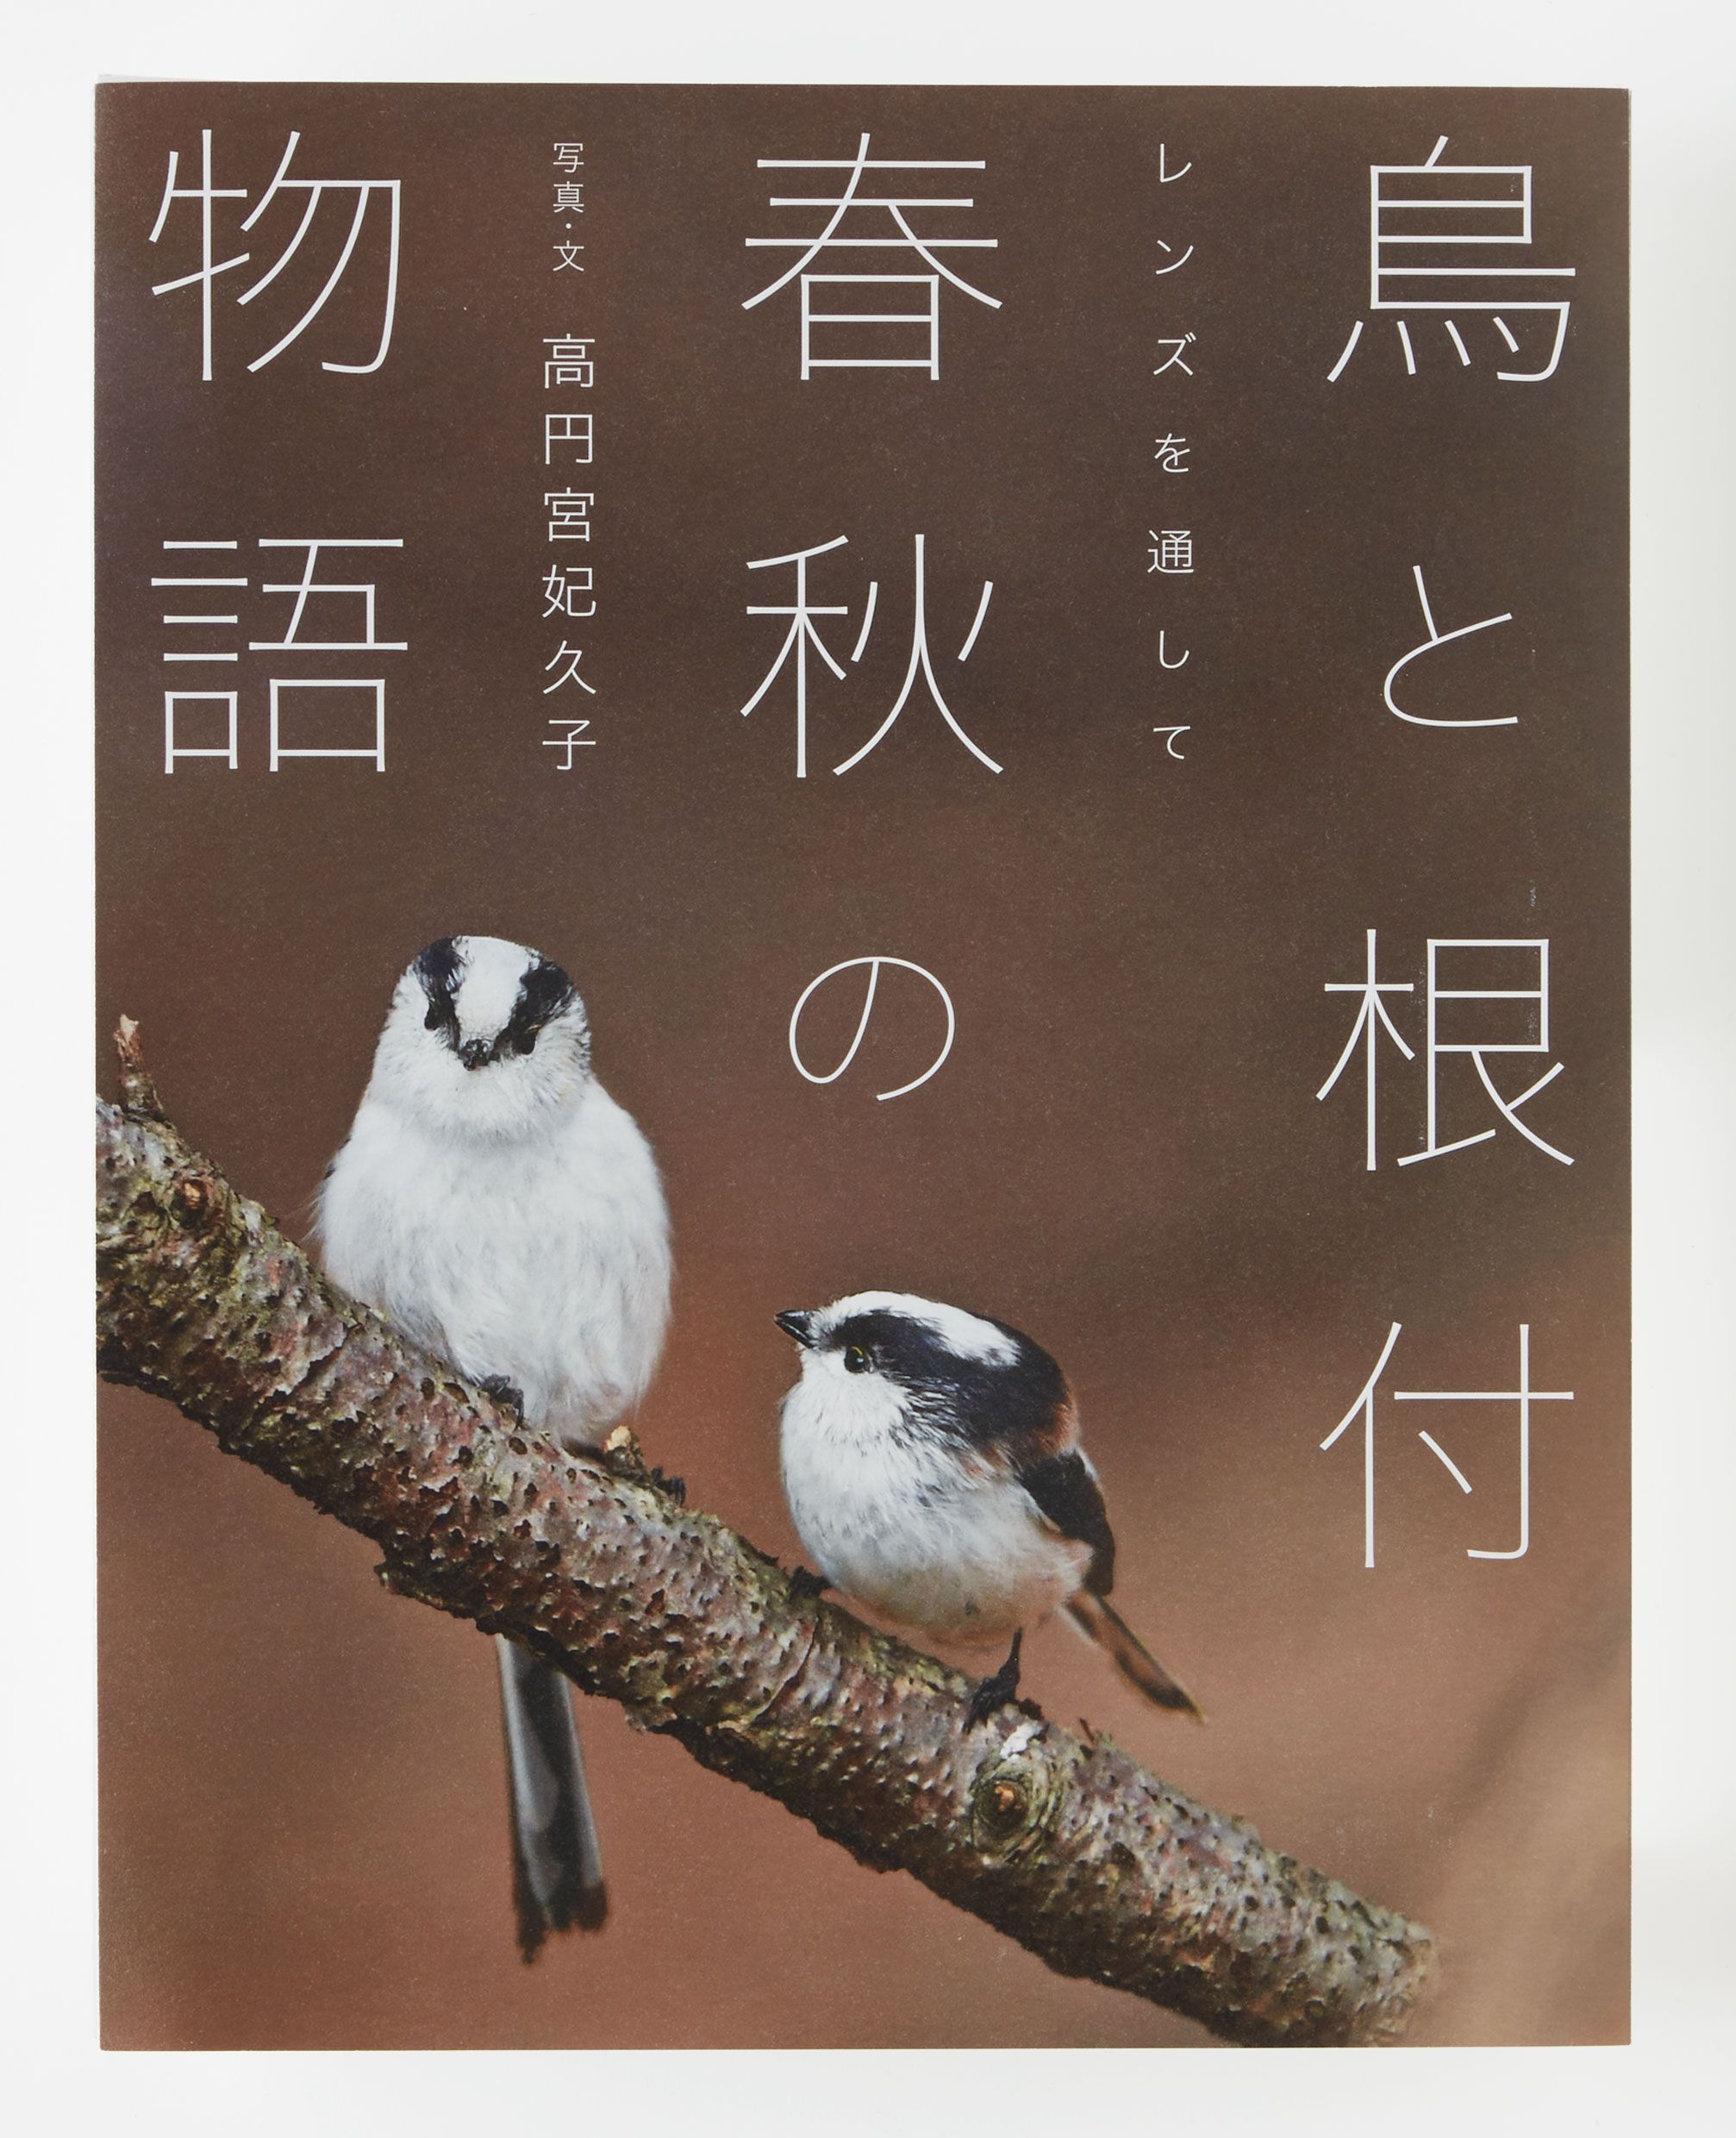 高円宮妃久子殿下による『婦人画報』の連載をまとめた書籍『鳥と根付 春秋の物語』が発売！